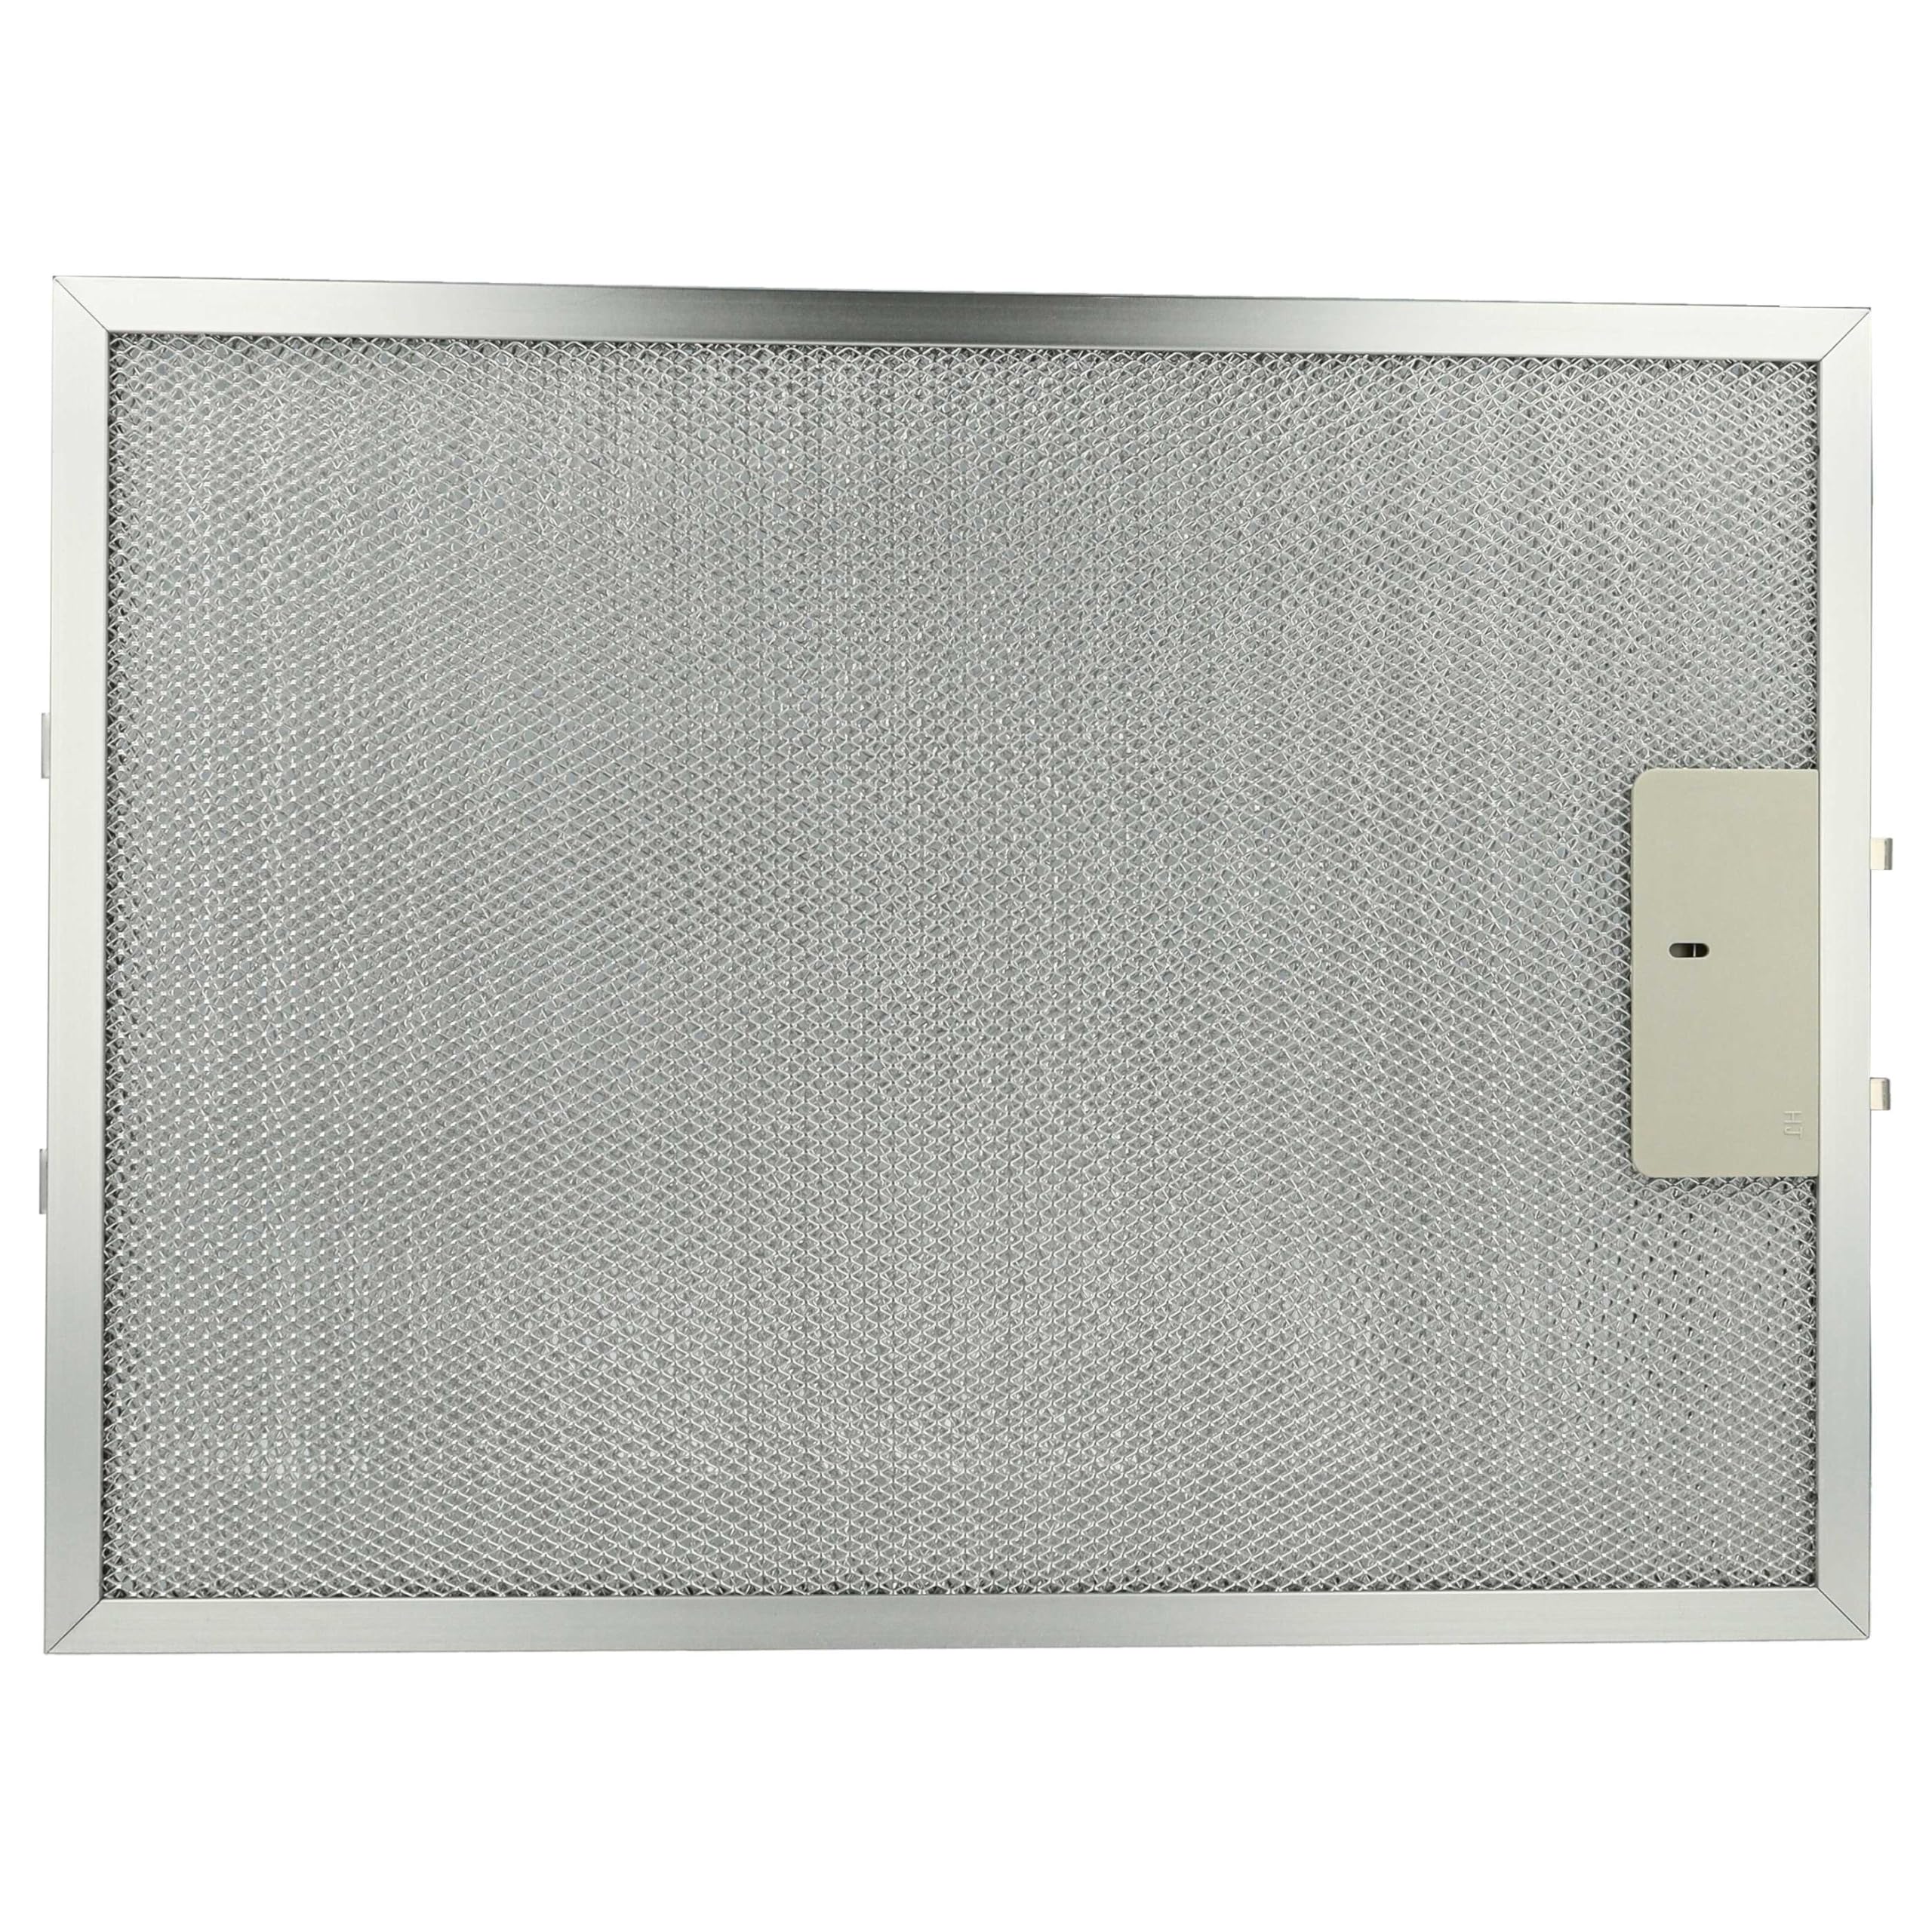 vhbw Filter Metallfettfilter Dauerfilter kompatibel mit AEG DUB 1610 W 94215056500 Dunstabzugshaube - 38 x 28,3 x 0,9 cm, Metall